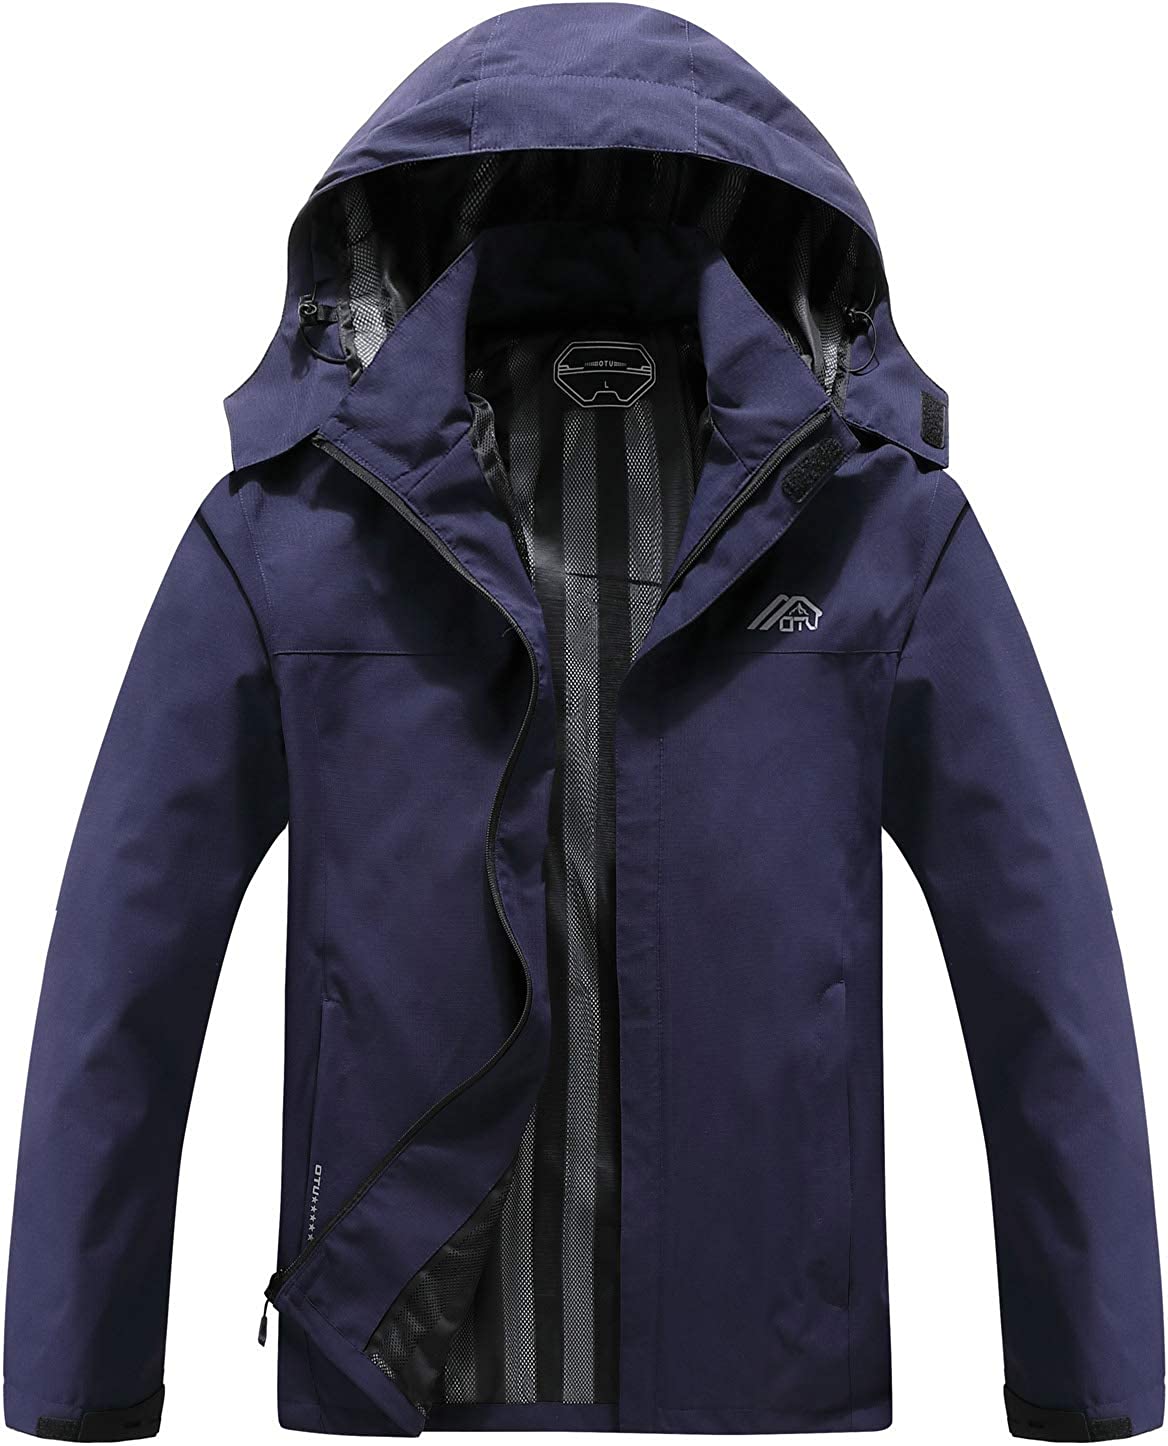 Men's Lightweight Waterproof Hooded Rain Jacket Outdoor, Navy, Size XX ...